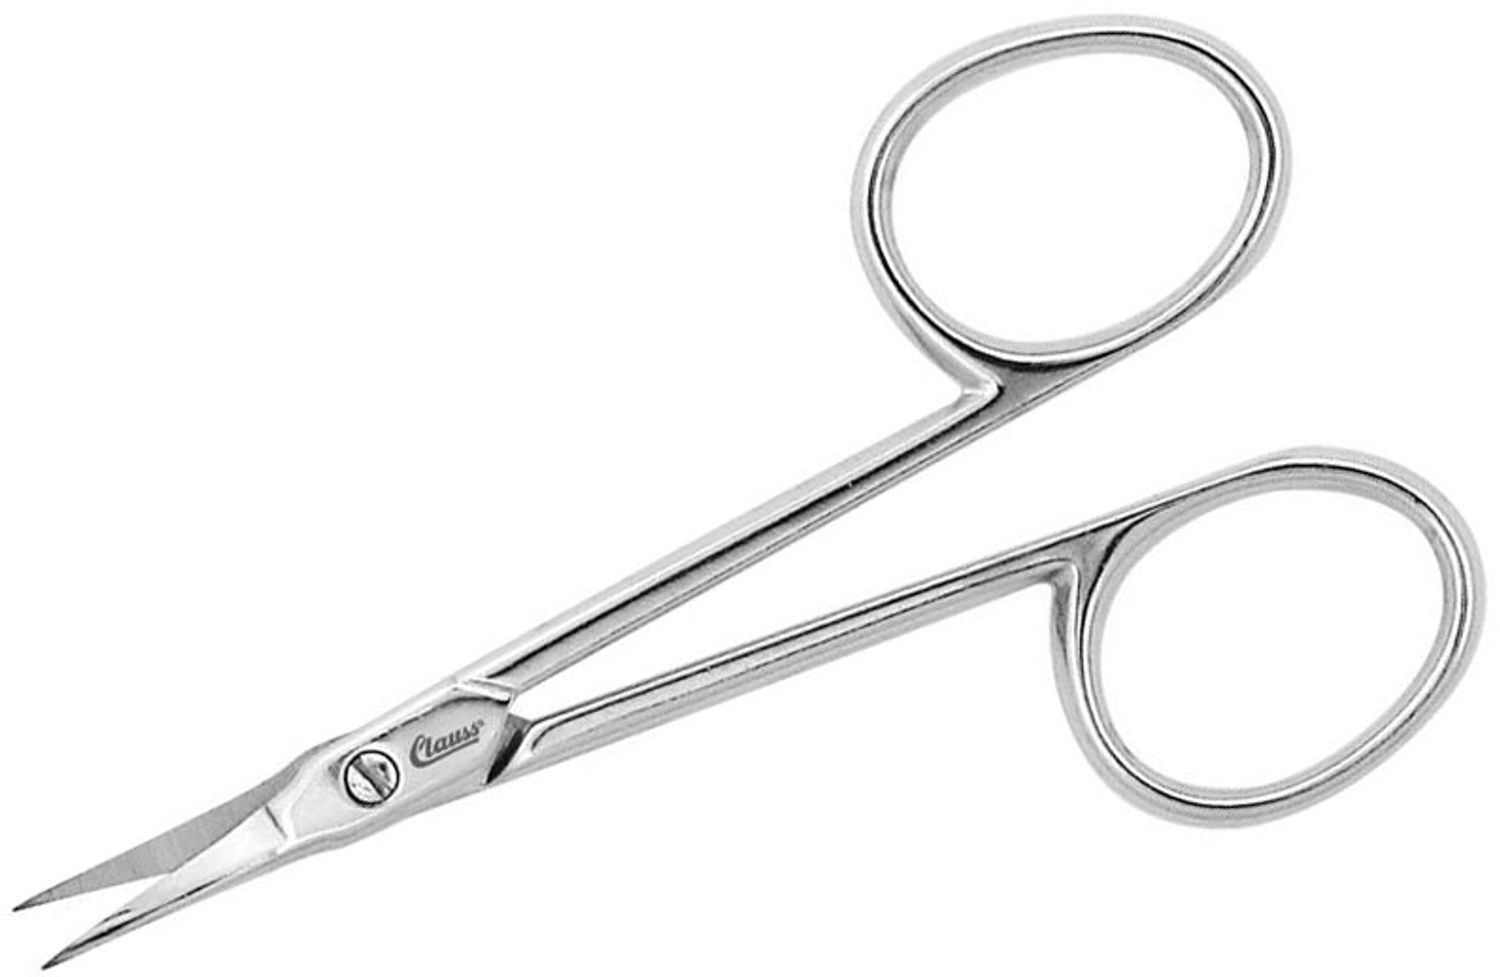 Clauss 12050 Multipurpose, Scissors, 3-1/4L